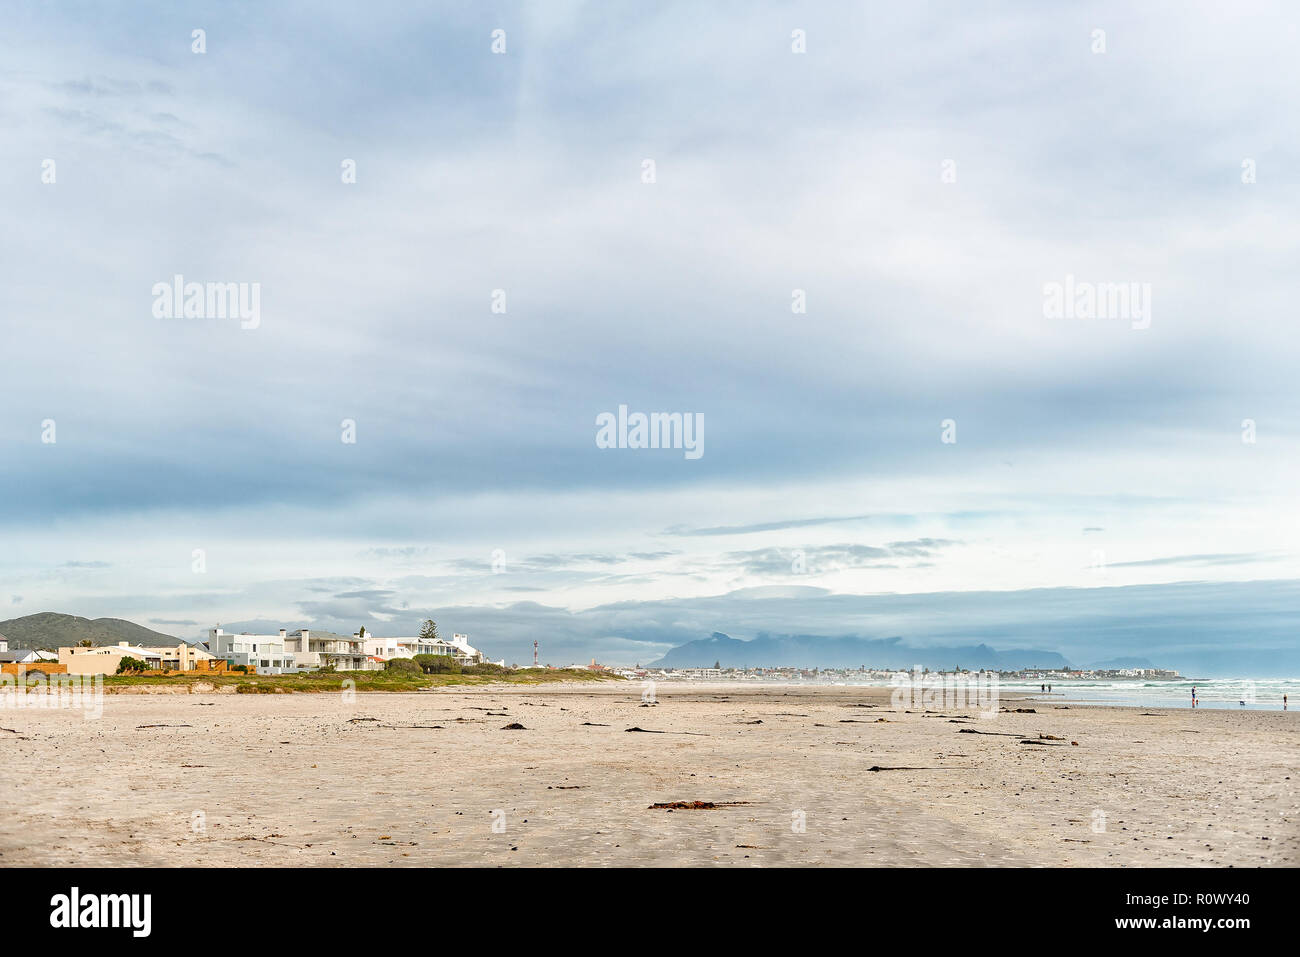 MELKBOSSTRAND, SÜDAFRIKA, 19. AUGUST 2018: eine Strandszene in Melkbosstrand in der Western Cape Provinz. Gebäude, Menschen und den Tafelberg sind vi Stockfoto